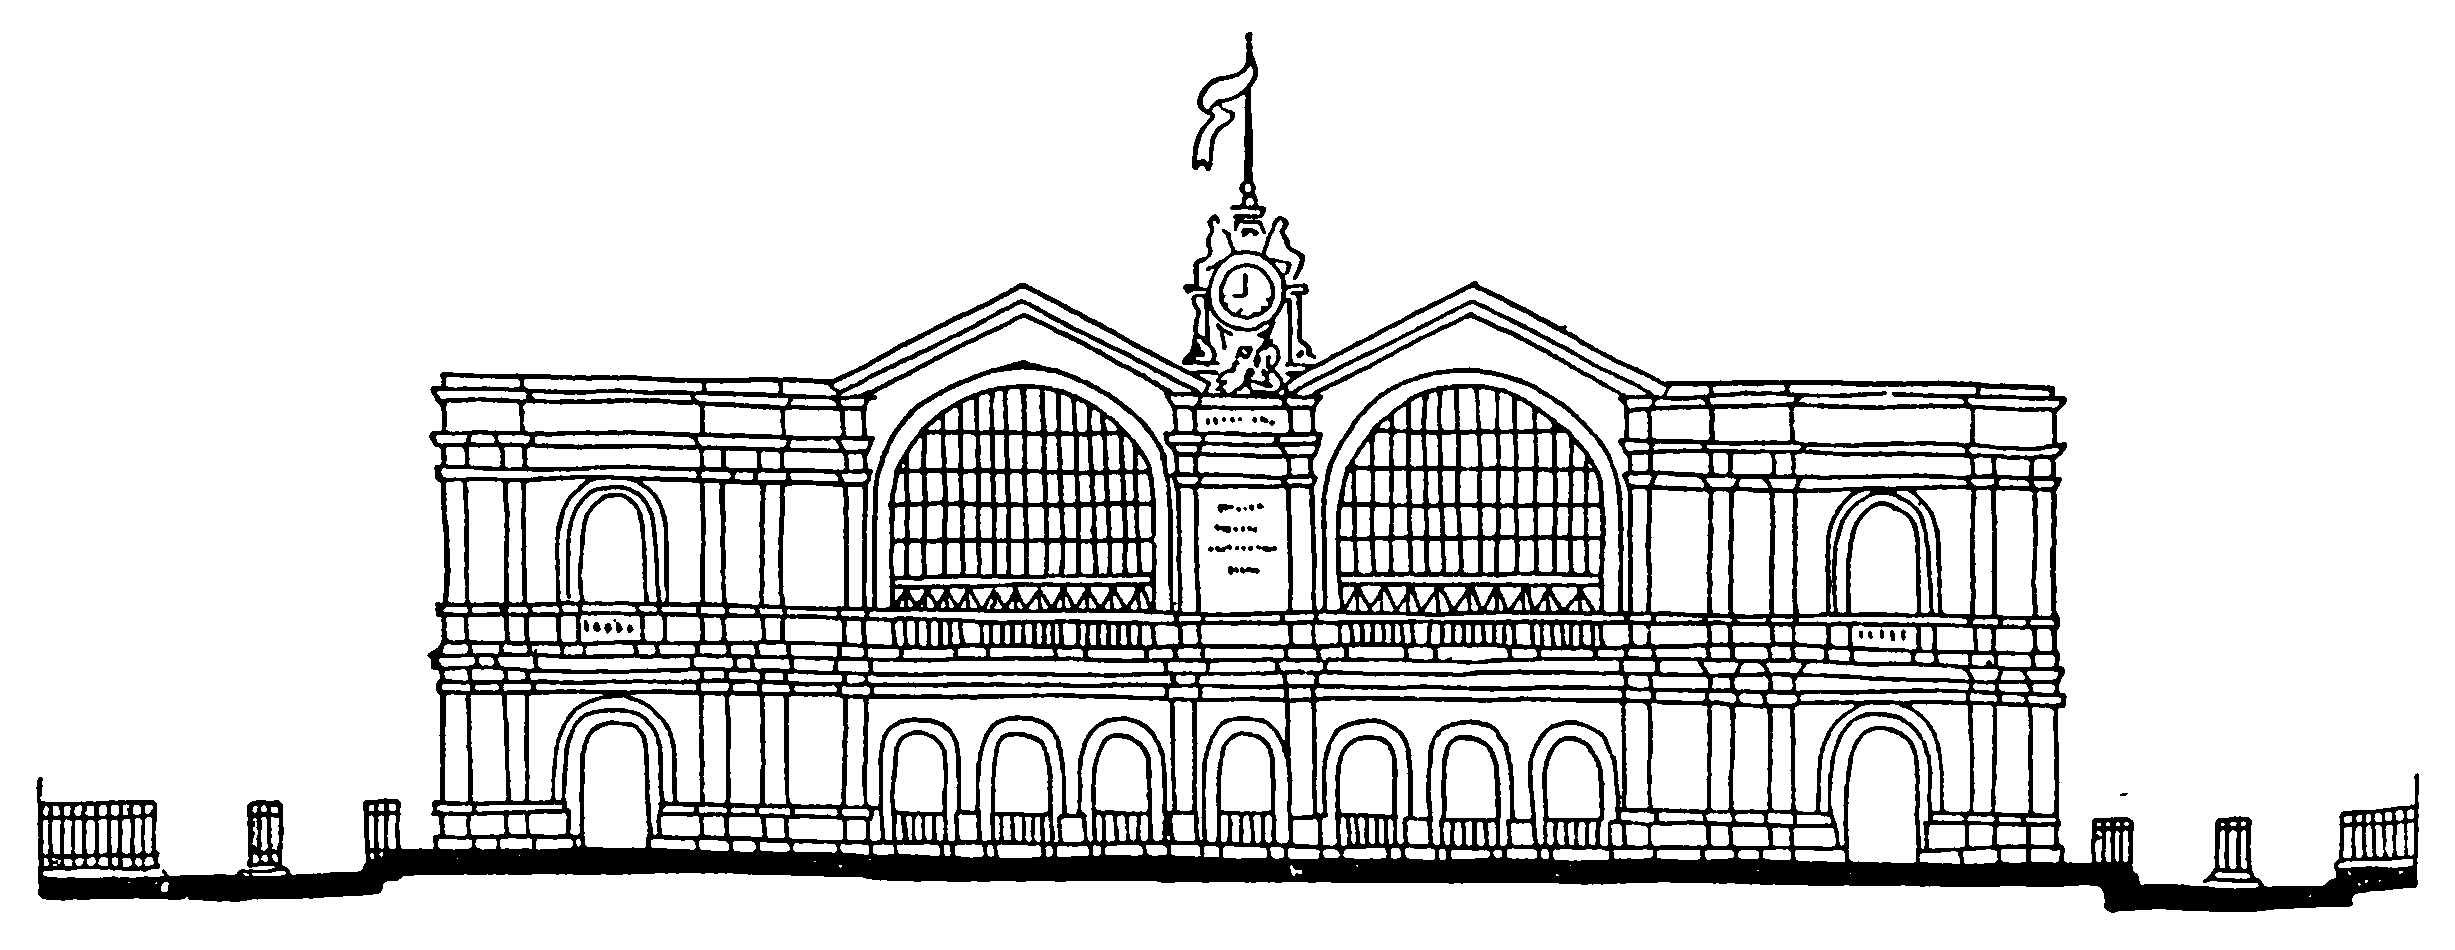 32. Париж. Вокзал Монпарнас, 1850—1852 гг. В. Ленуар. Фасад